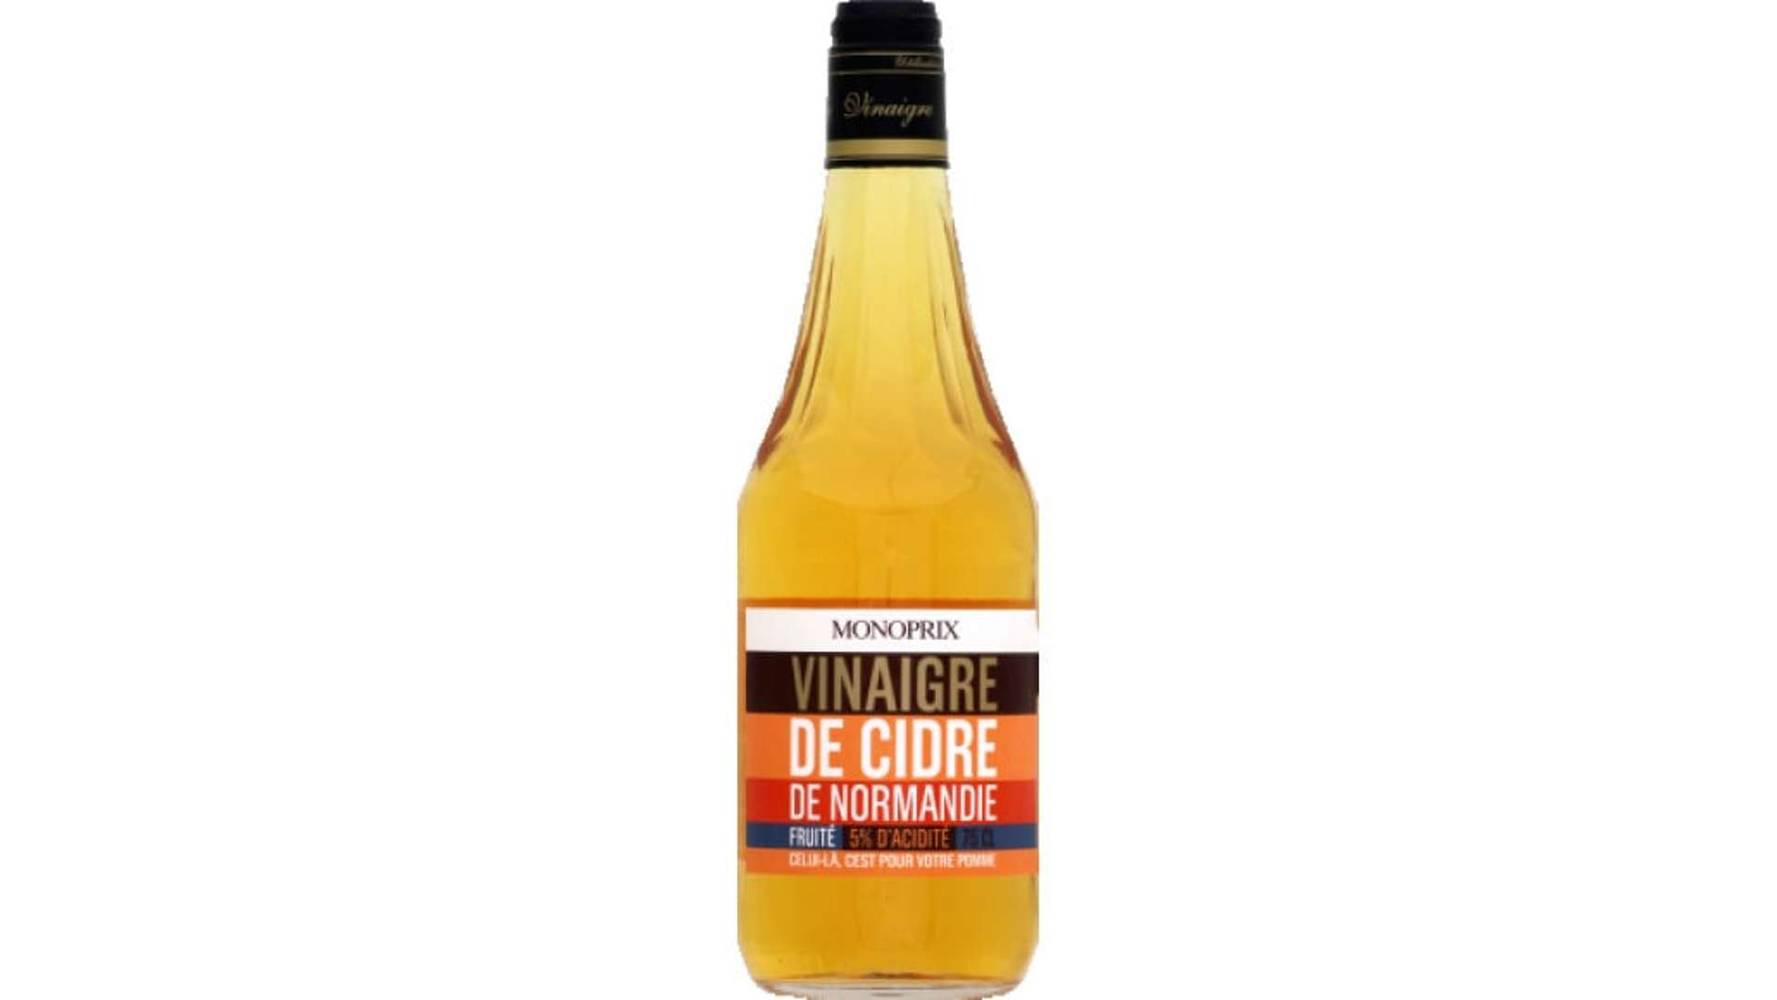 Monoprix Vinaigre de cidre de Normandie, fruité 5% d'acidité La bouteille de 75cl